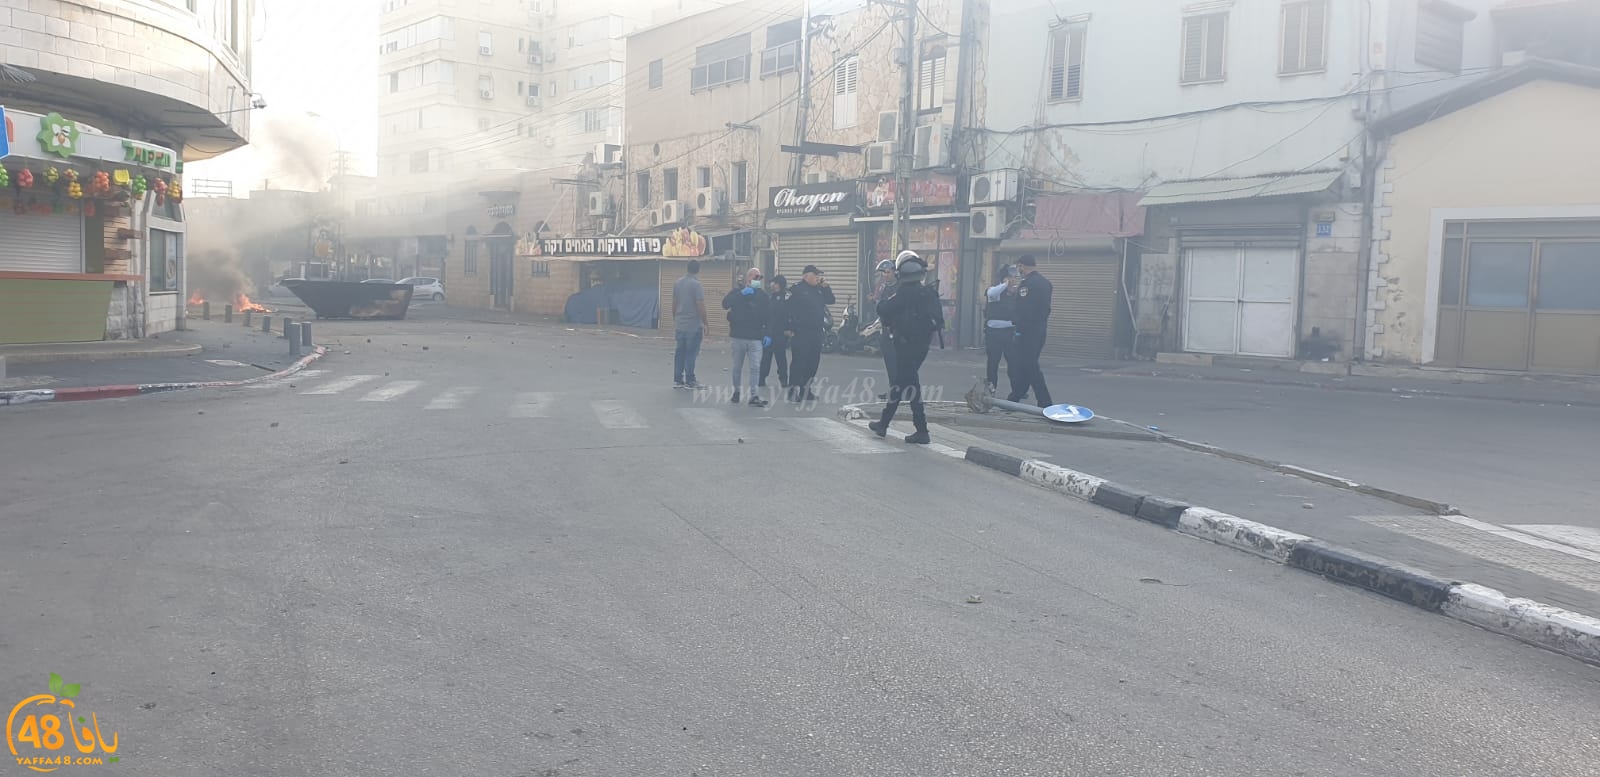 فيديو: احتجاجات متواصلة في يافا والشرطة تُطلق القنابل الصوتية لتفرقة المتظاهرين